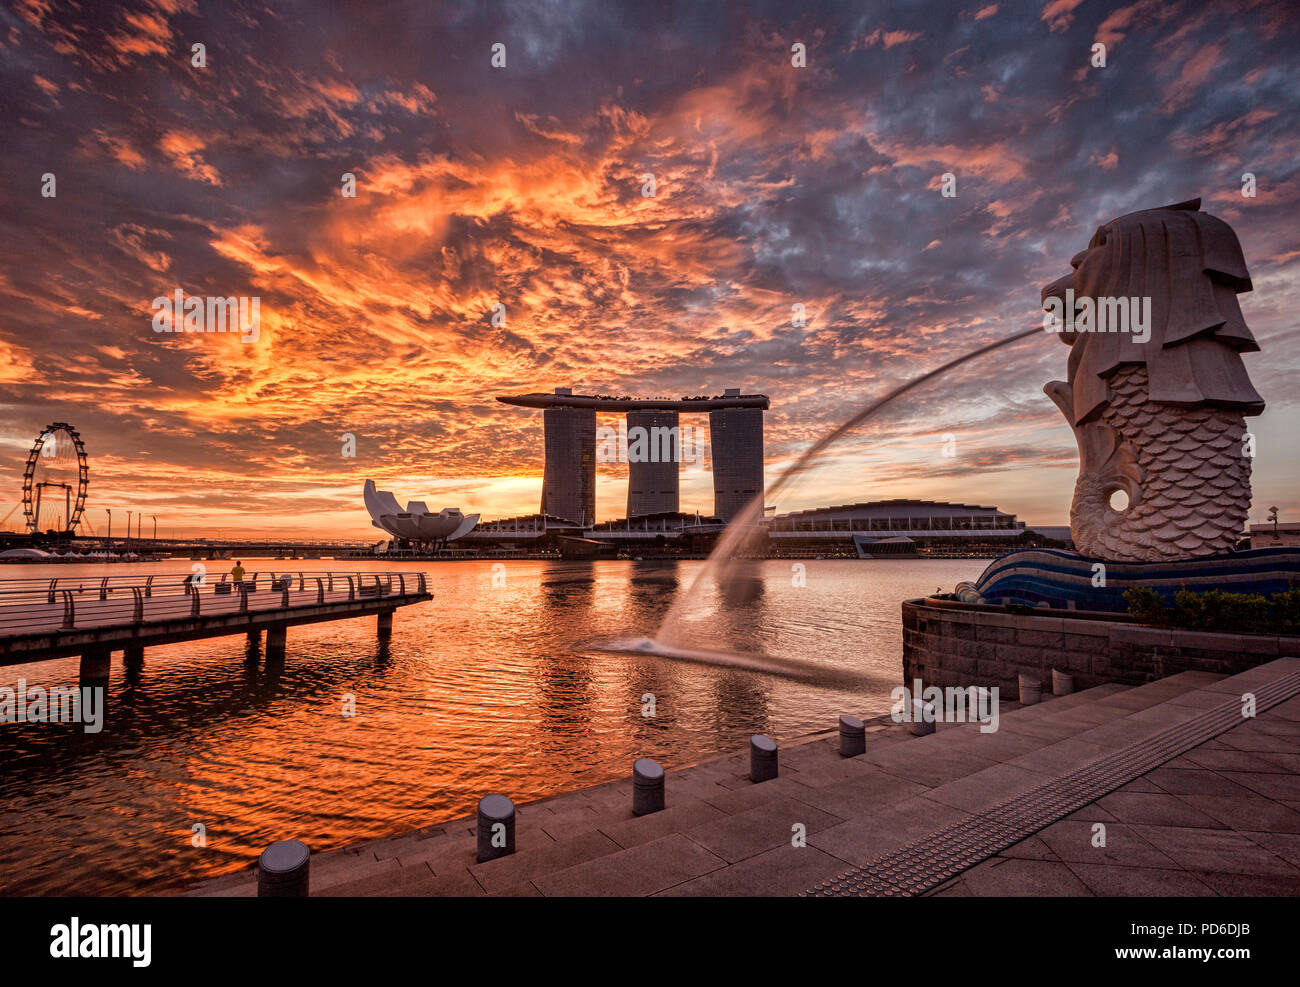 Skyline von Singapur bei Sonnenaufgang, mit der Merlion, das Marina Bay Sands, der Kunst und Wissenschaft Museum und der Singapore Flyer, alle unter einem dramatischen Sunrise Stockfoto